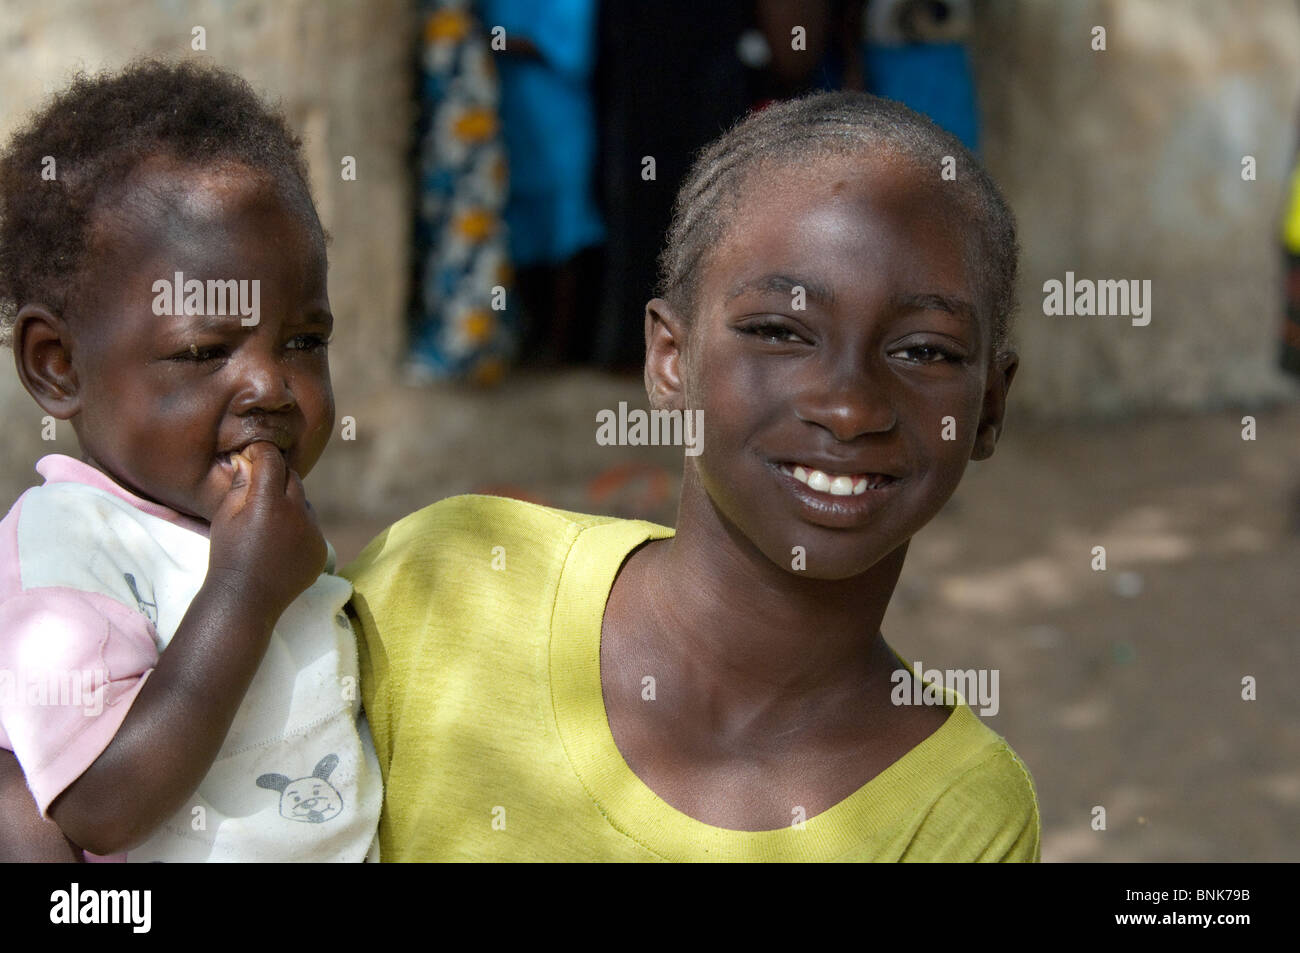 Afrique, Sénégal, Dakar. Village Wolof, le plus grand groupe ethnique du Sénégal, principalement les agriculteurs et pêcheurs. Jeune fille avec bébé. Banque D'Images